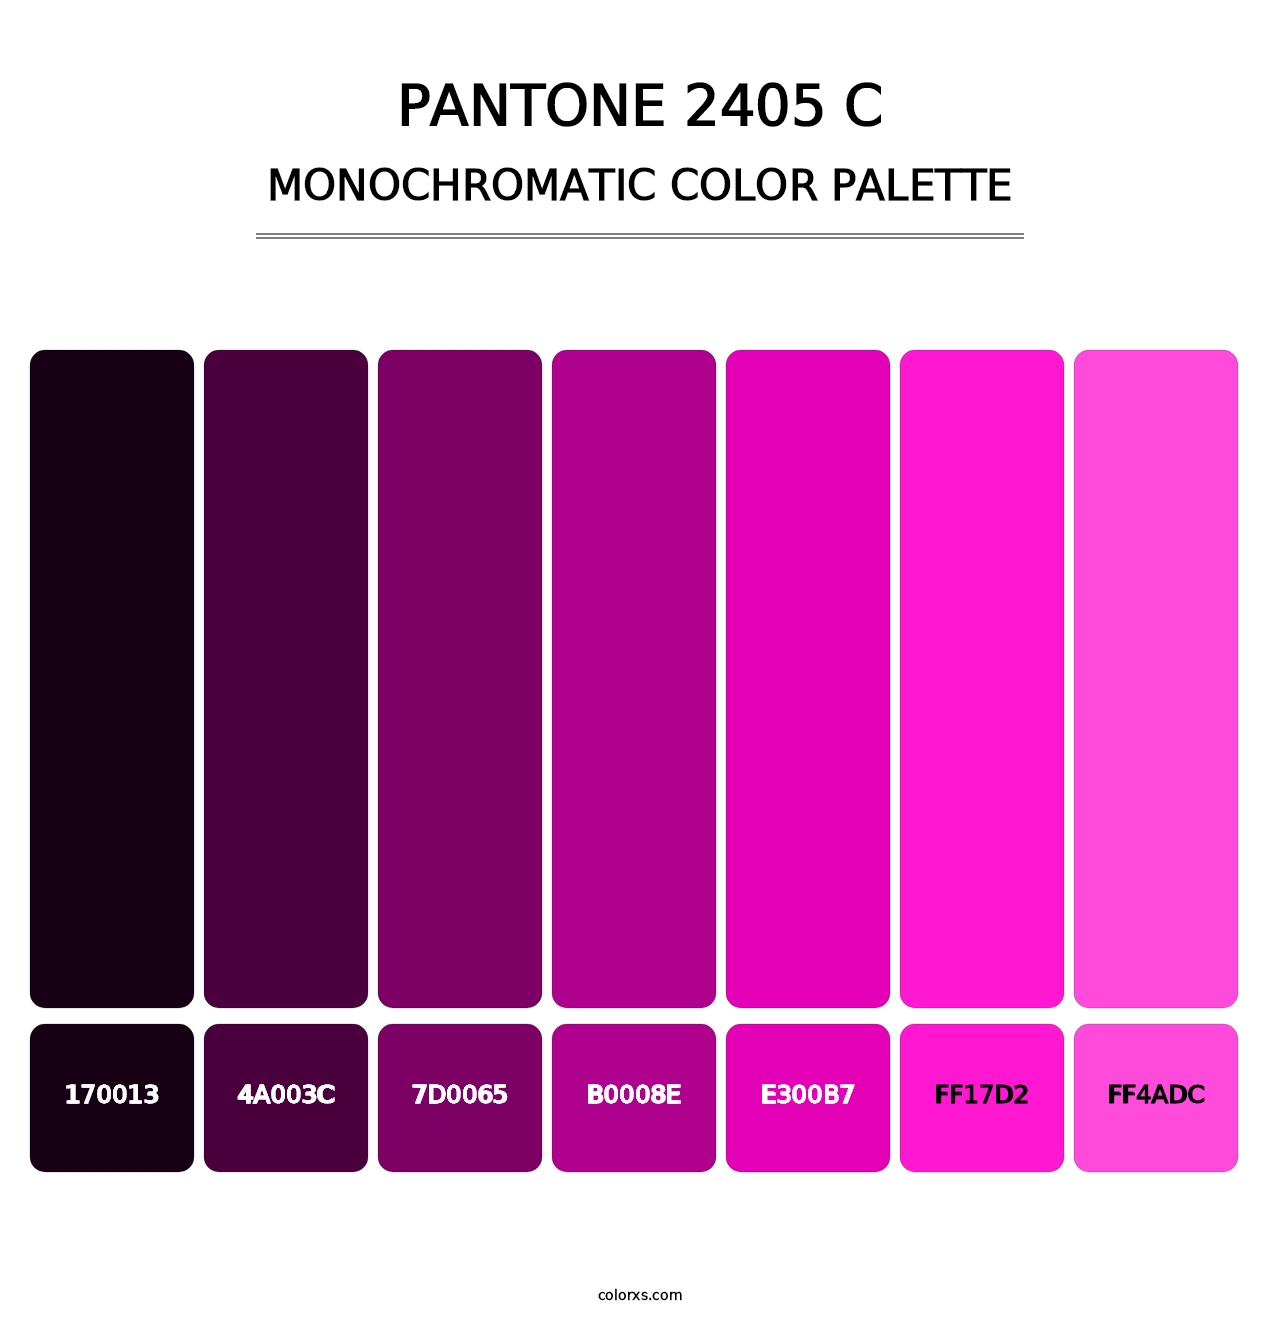 PANTONE 2405 C - Monochromatic Color Palette